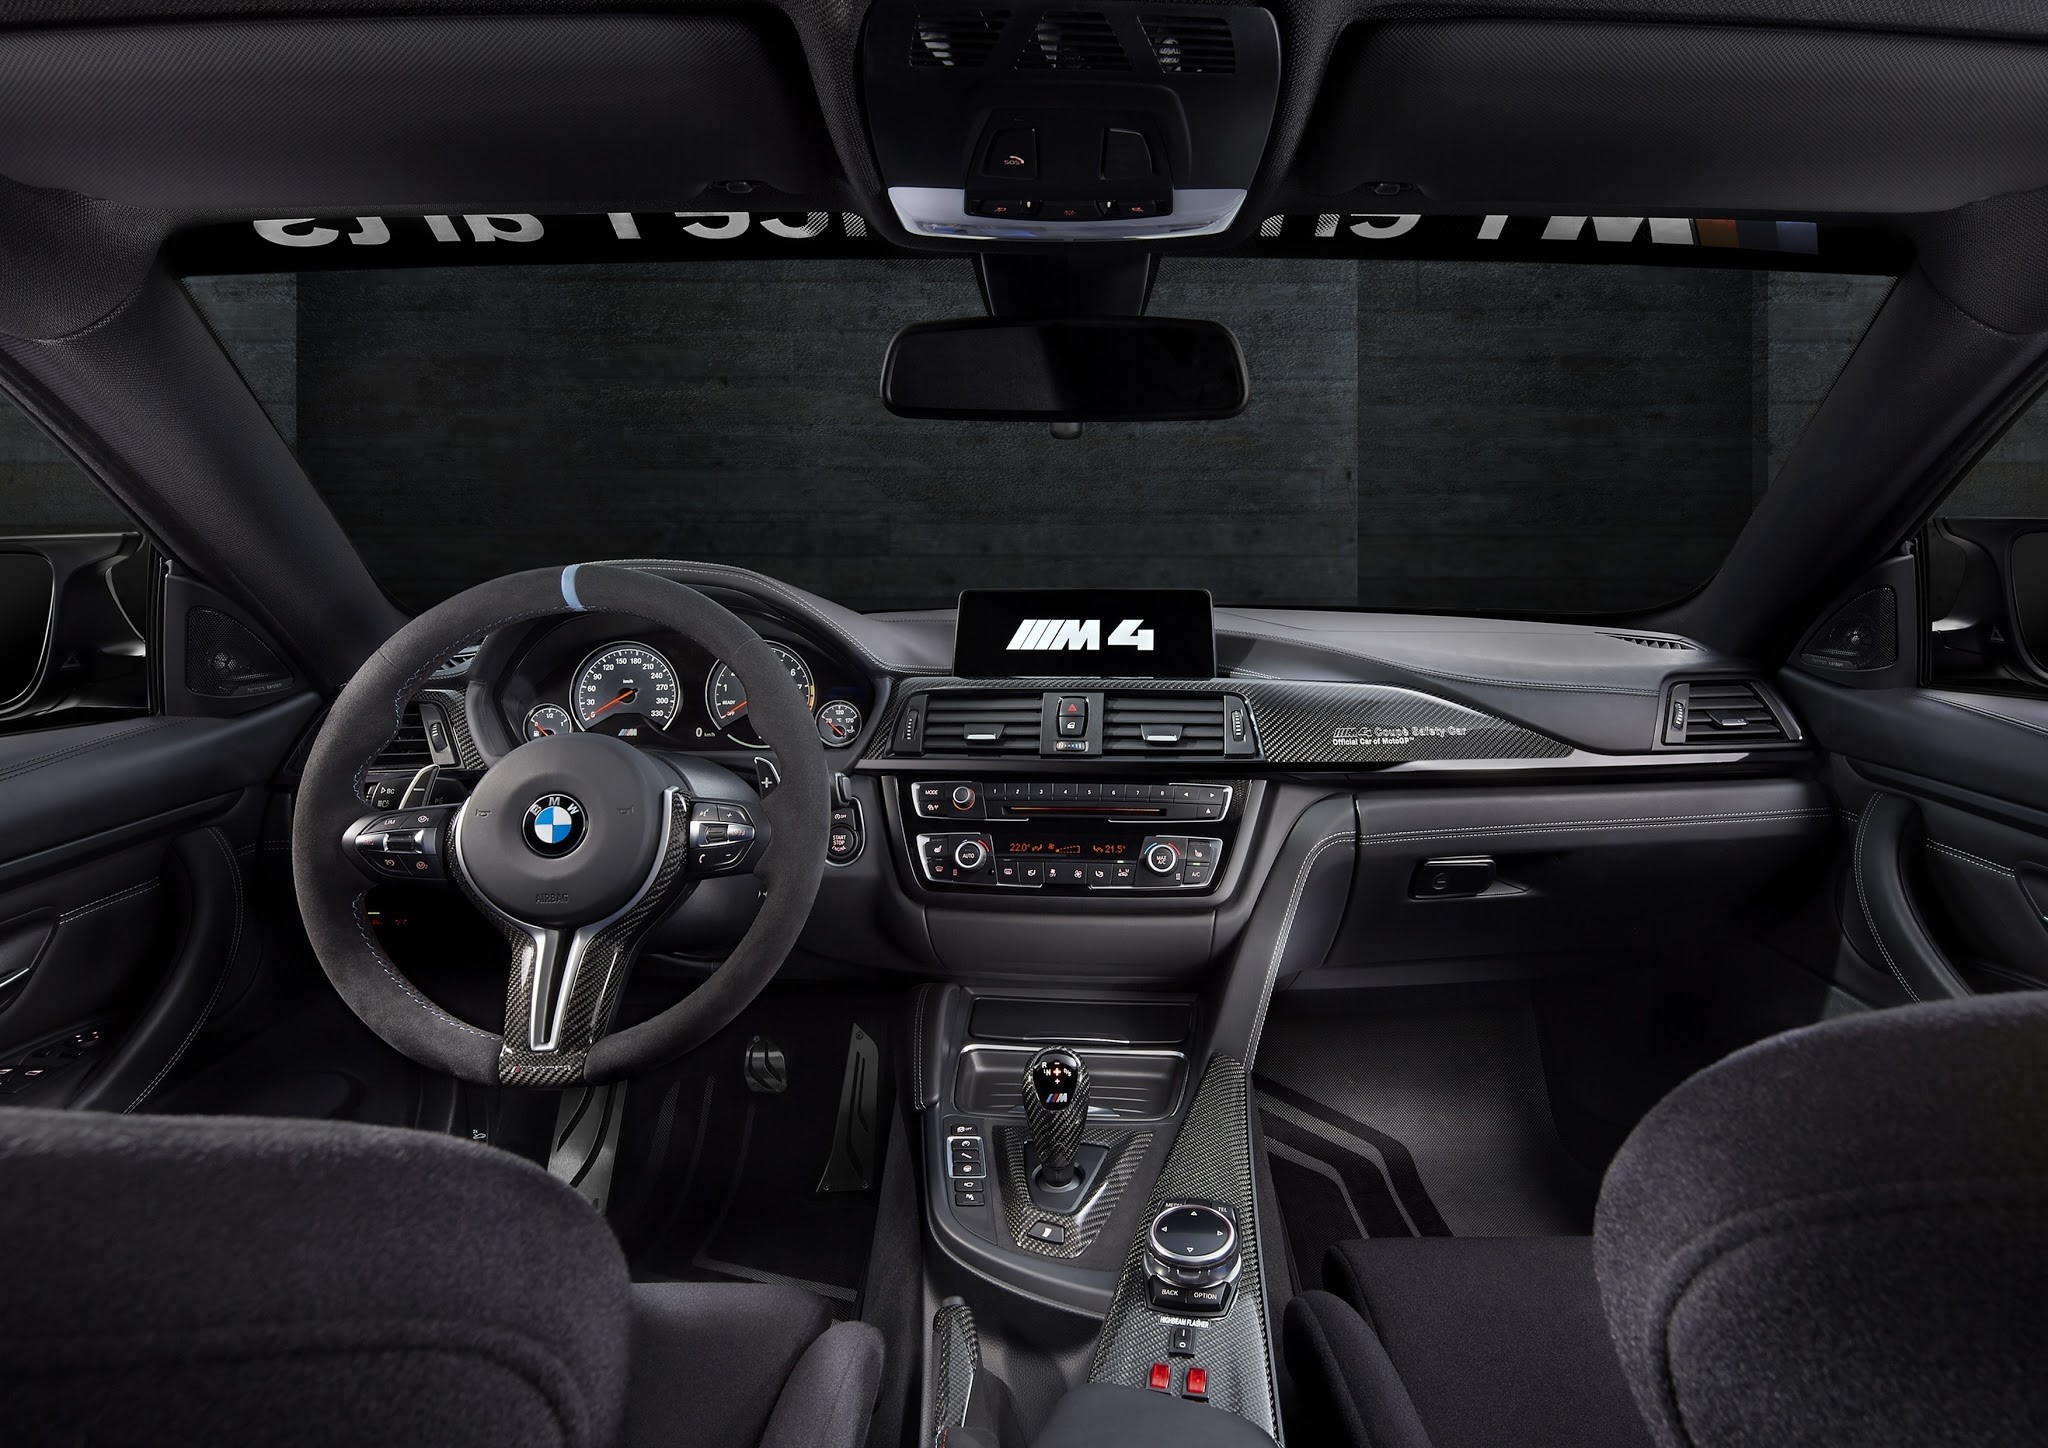 General 2048x1448 BMW M4 BMW car car interior vehicle